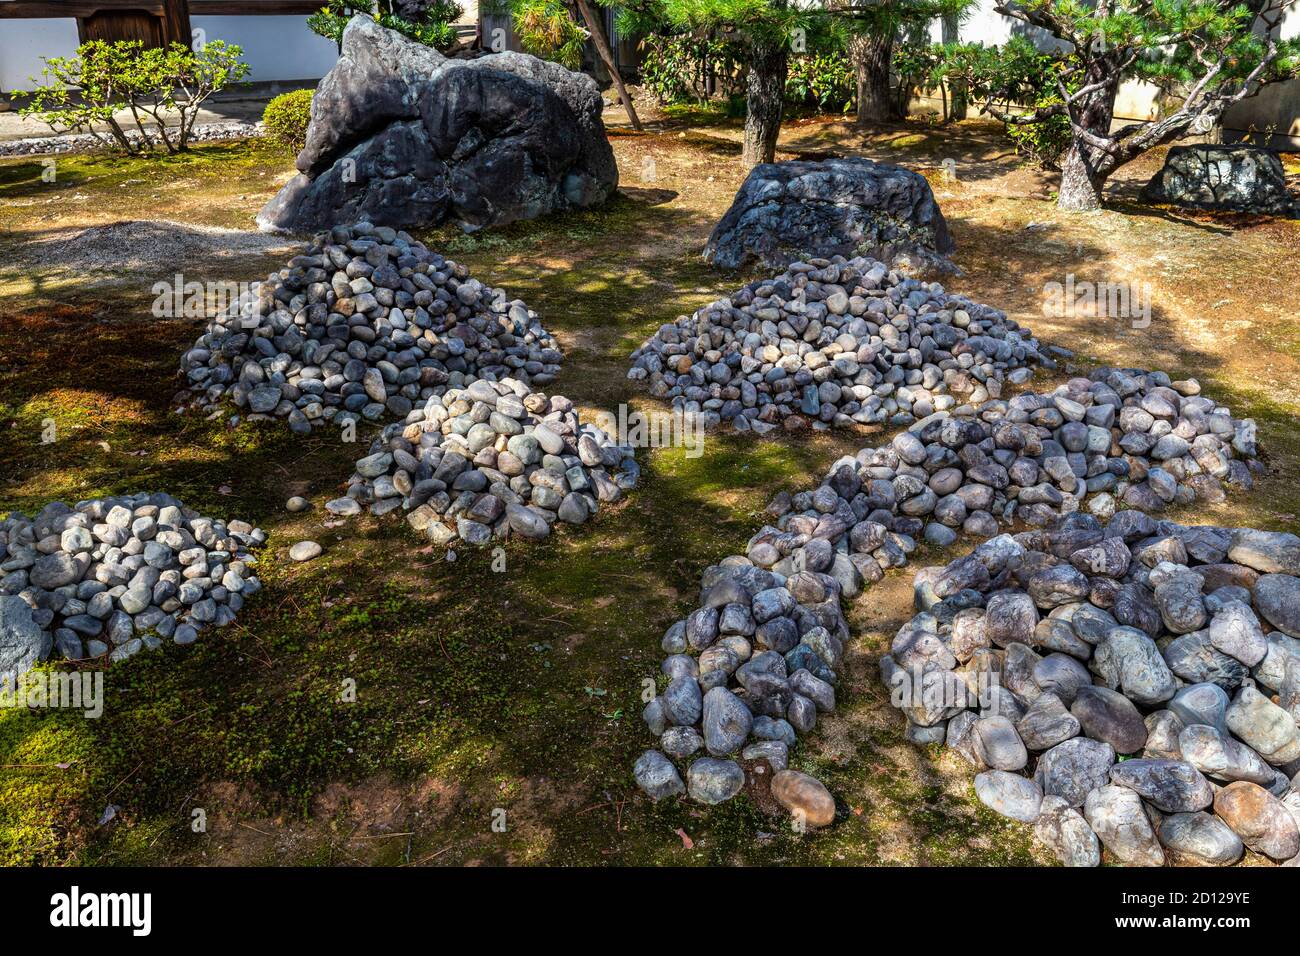 Saionji Temple Garden besteht aus ungewöhnlichen Hügeln von großen Steinen in seinem Innenhof angeordnet. Diese Steinhügel sind von Erde und Mo umgeben Stockfoto